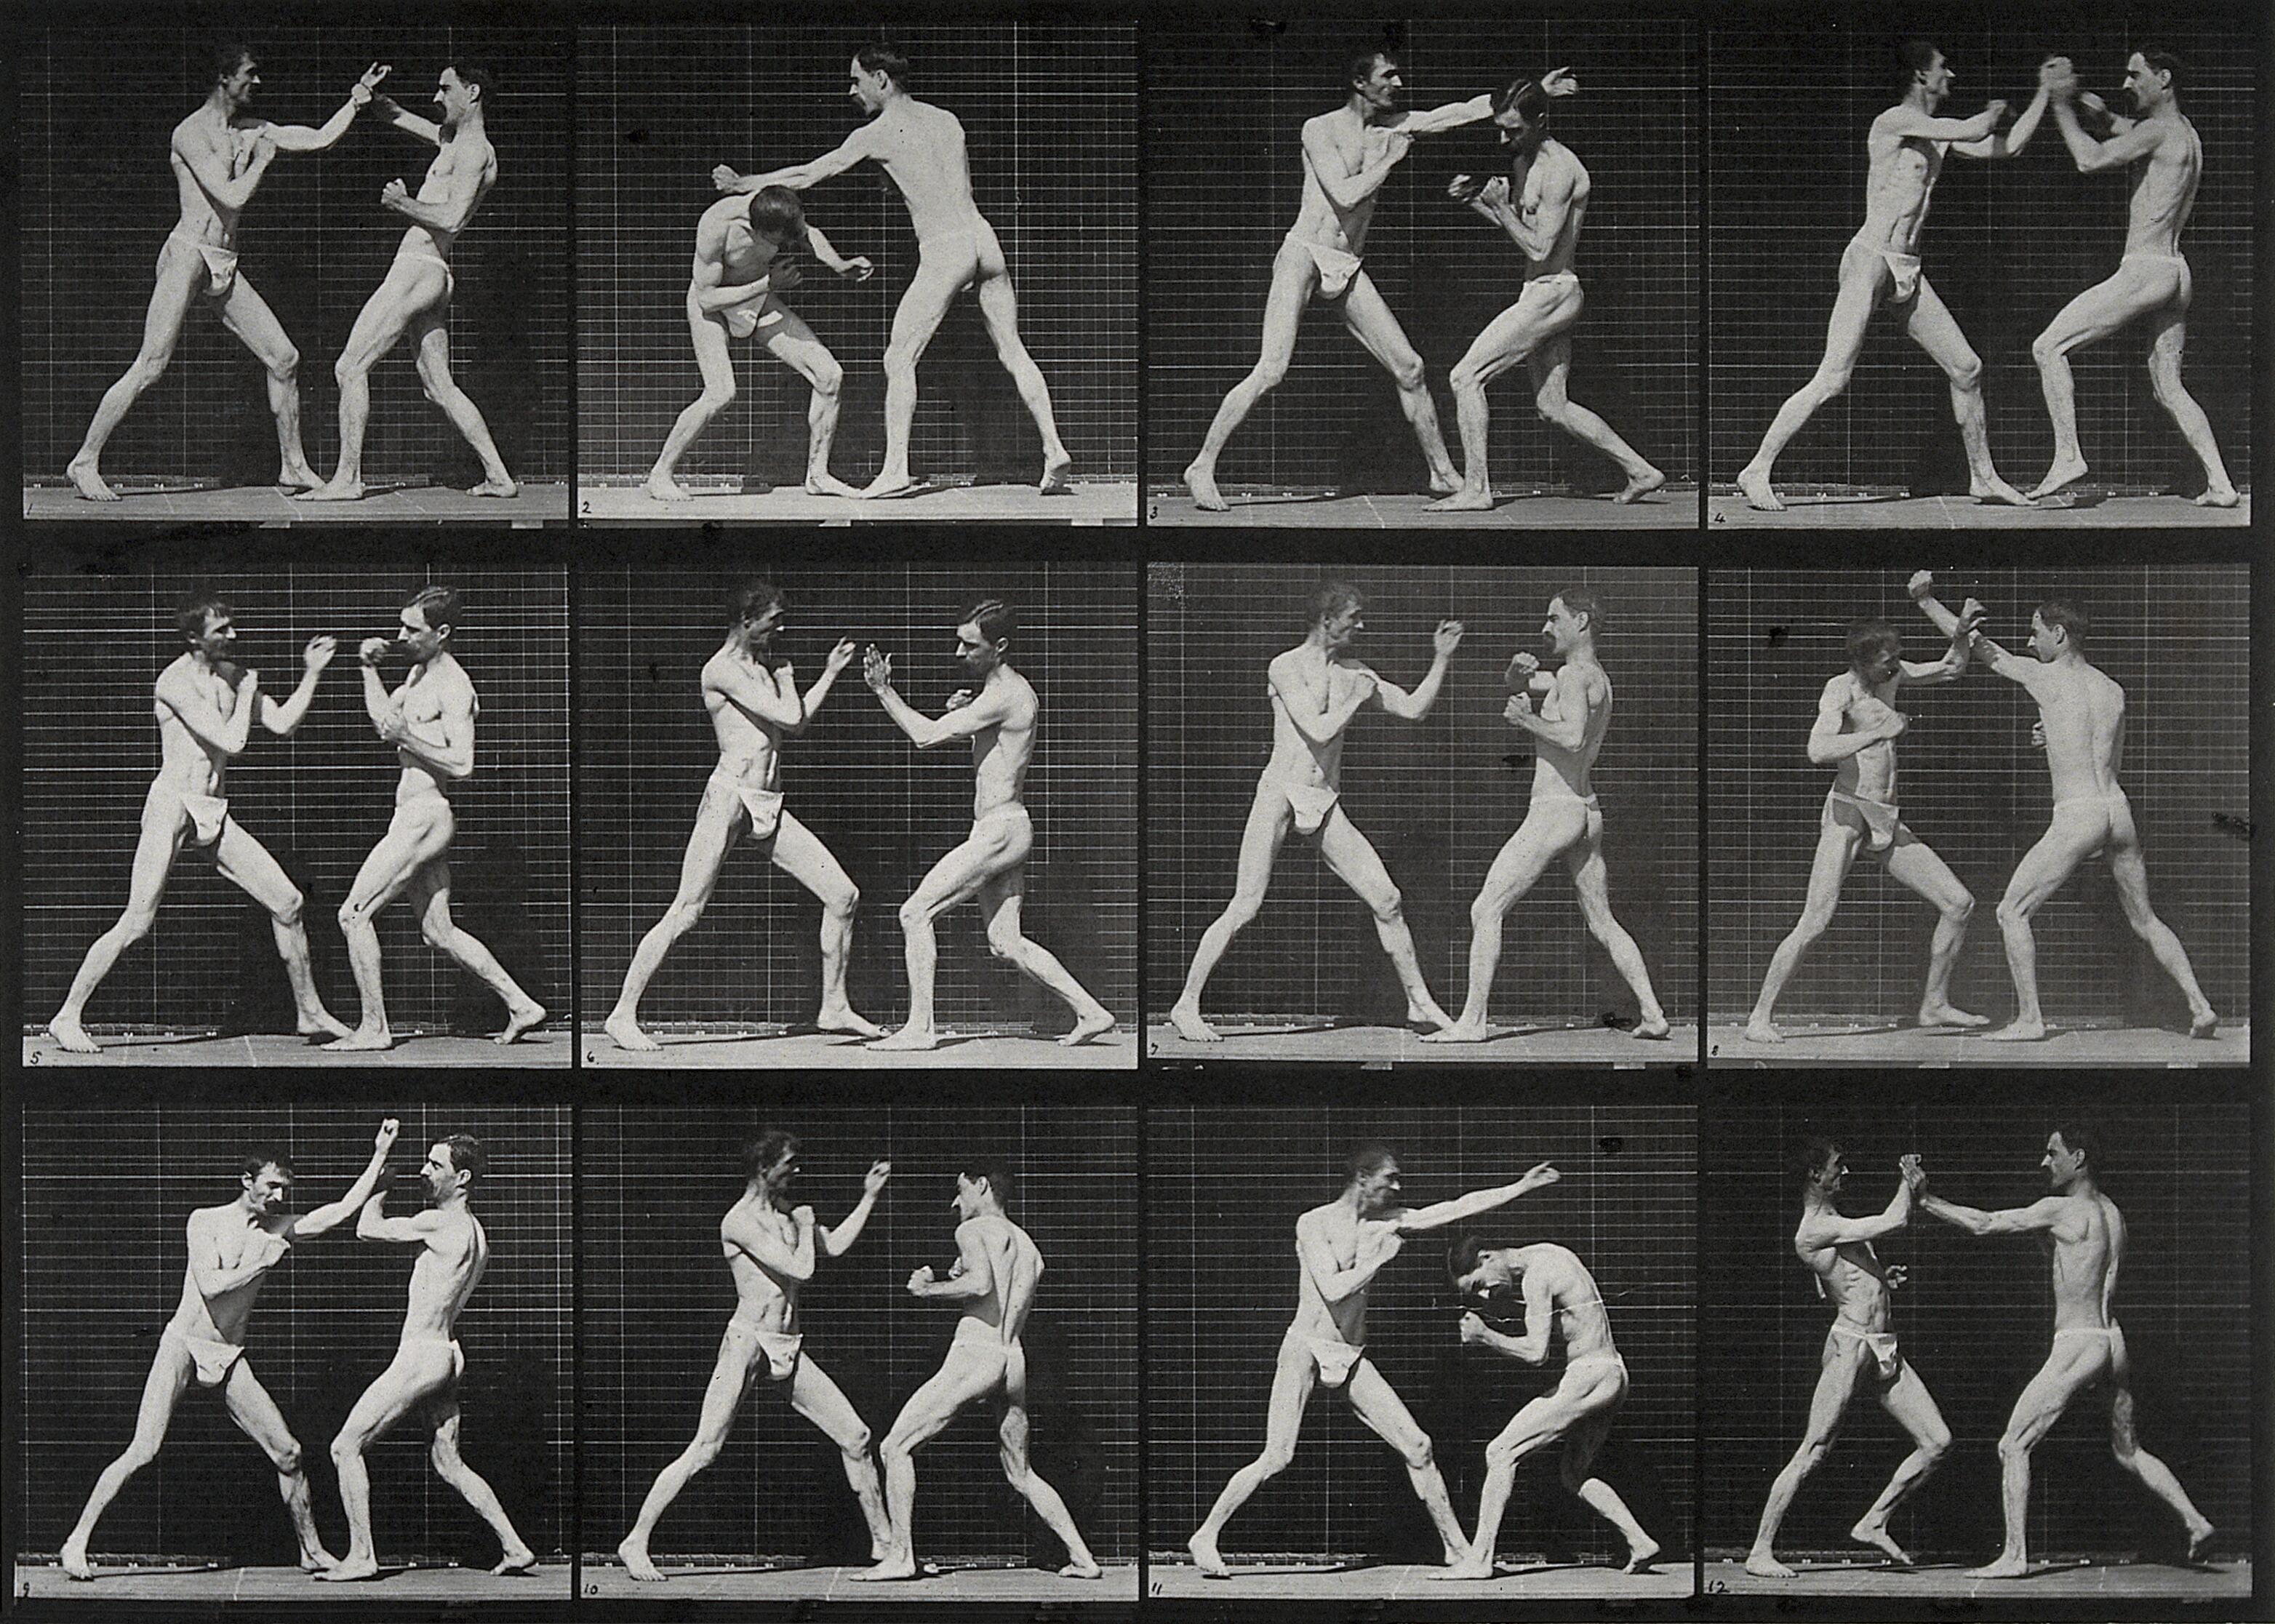 Two Men Boxing by Eadweard Muybridge - 1887 Europeana